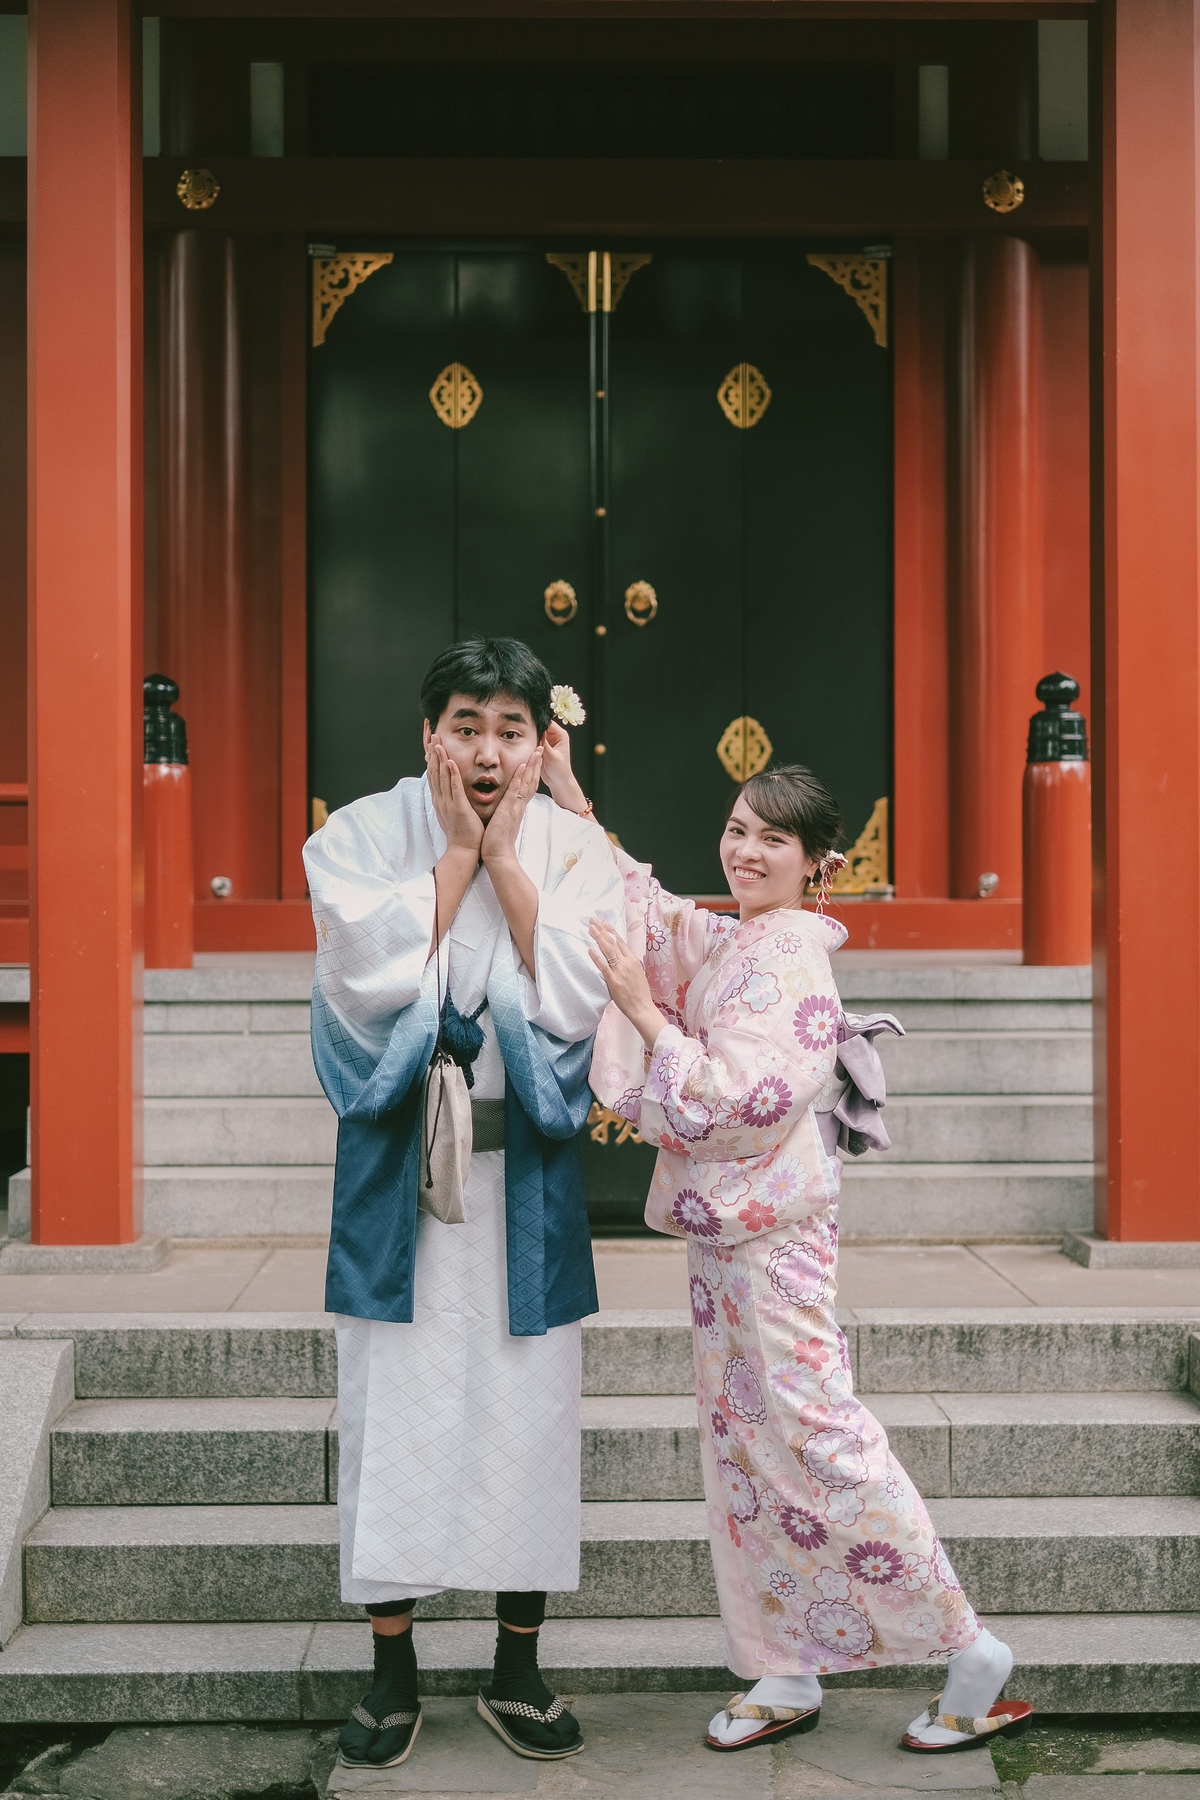 <p style="text-align:justify;"> Lấy bối cảnh ở đền Asakusa Kannon - ngôi đền linh thiêng của Tokyo, cặp đôi Việt - Nhật đem lại cảm giác yên bình cho người xem thông qua bộ ảnh cưới Kimono.</p>